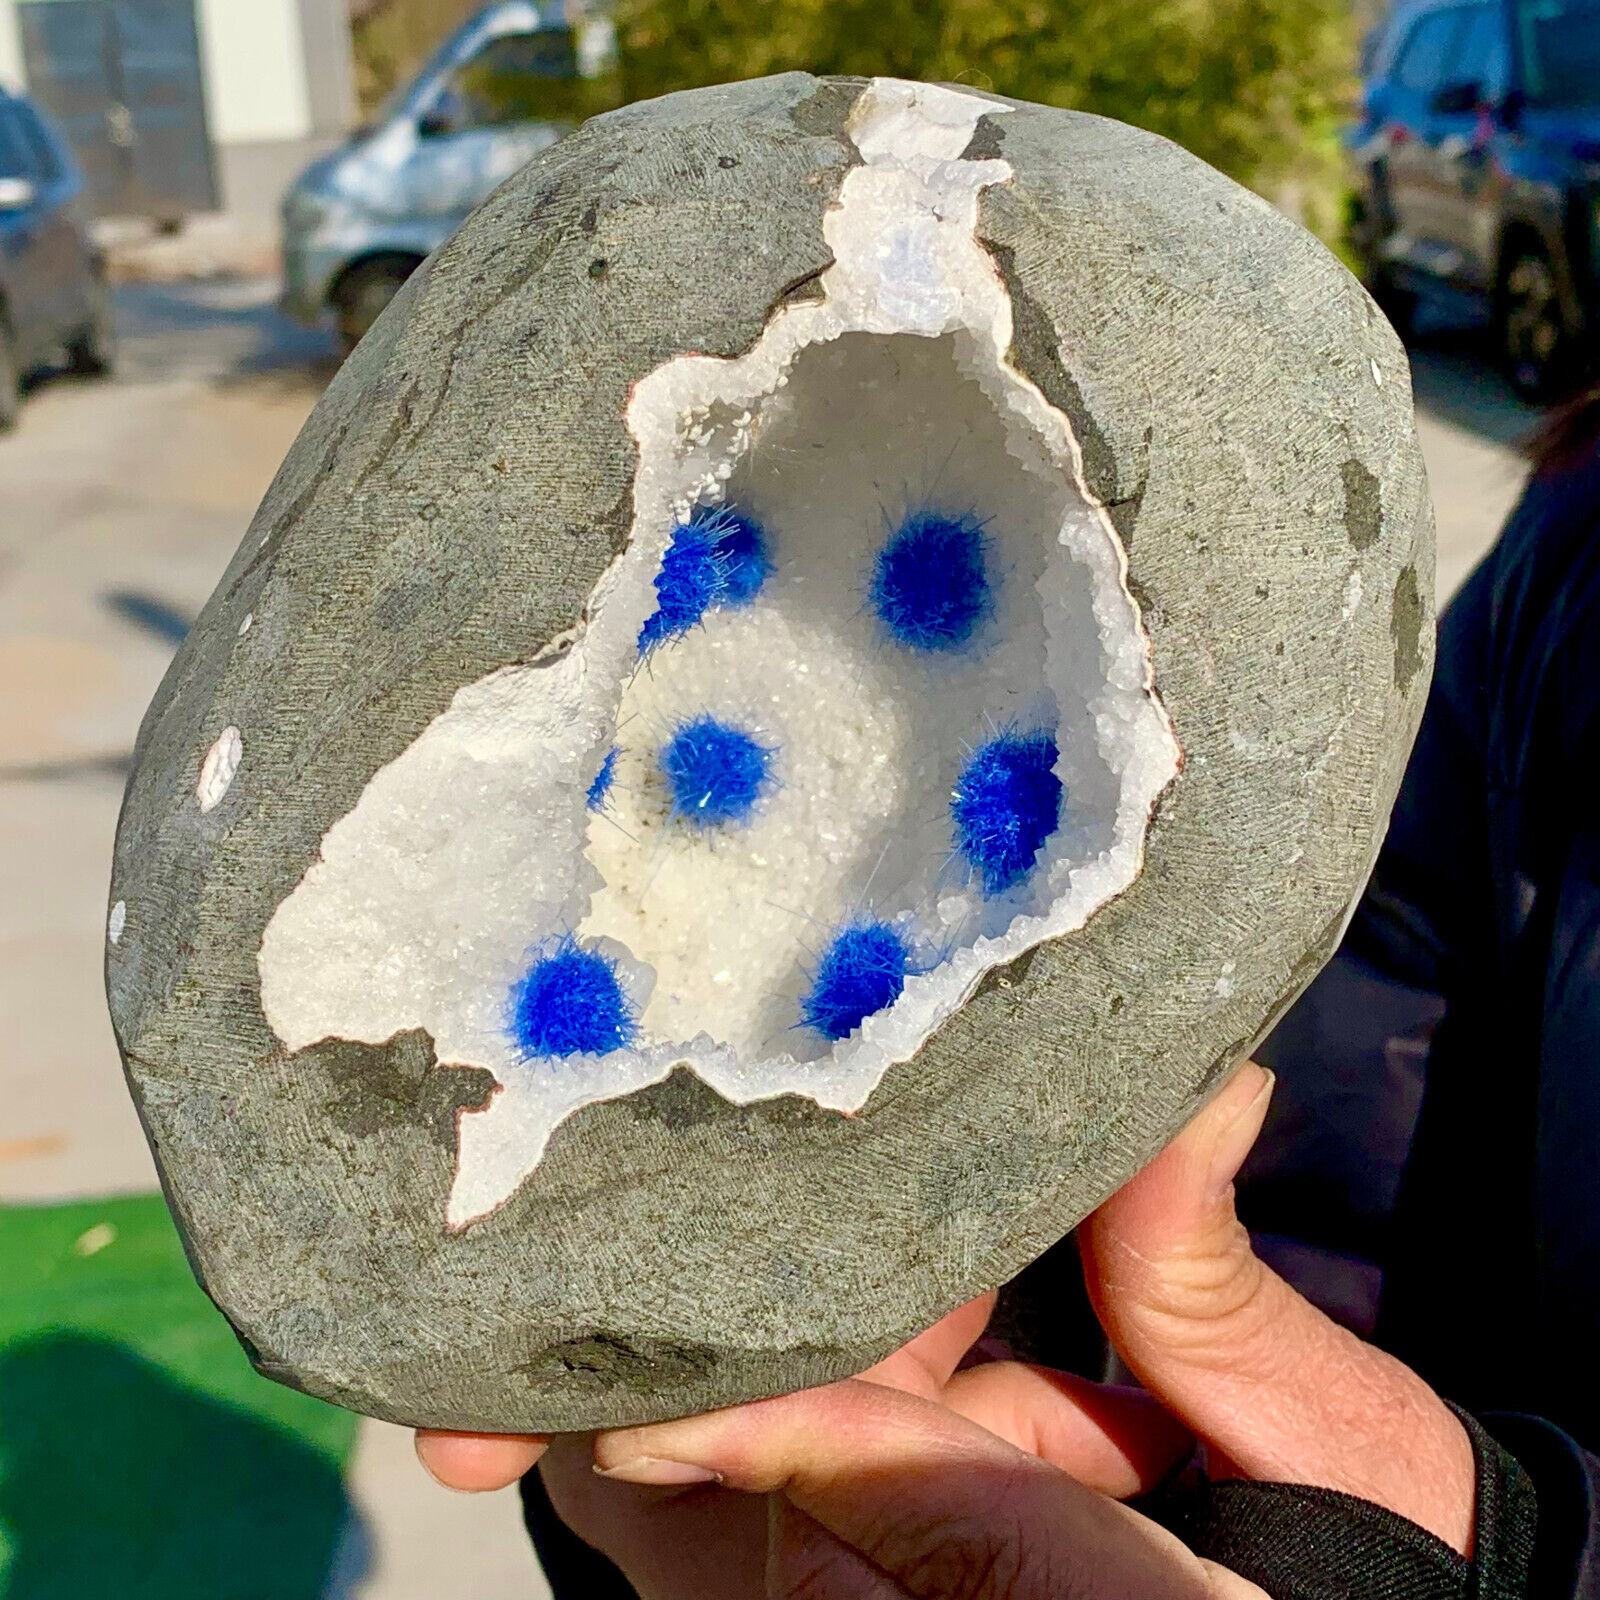 6.03LB Rare Moroccan blue magnesite and quartz crystal coexisting specimen